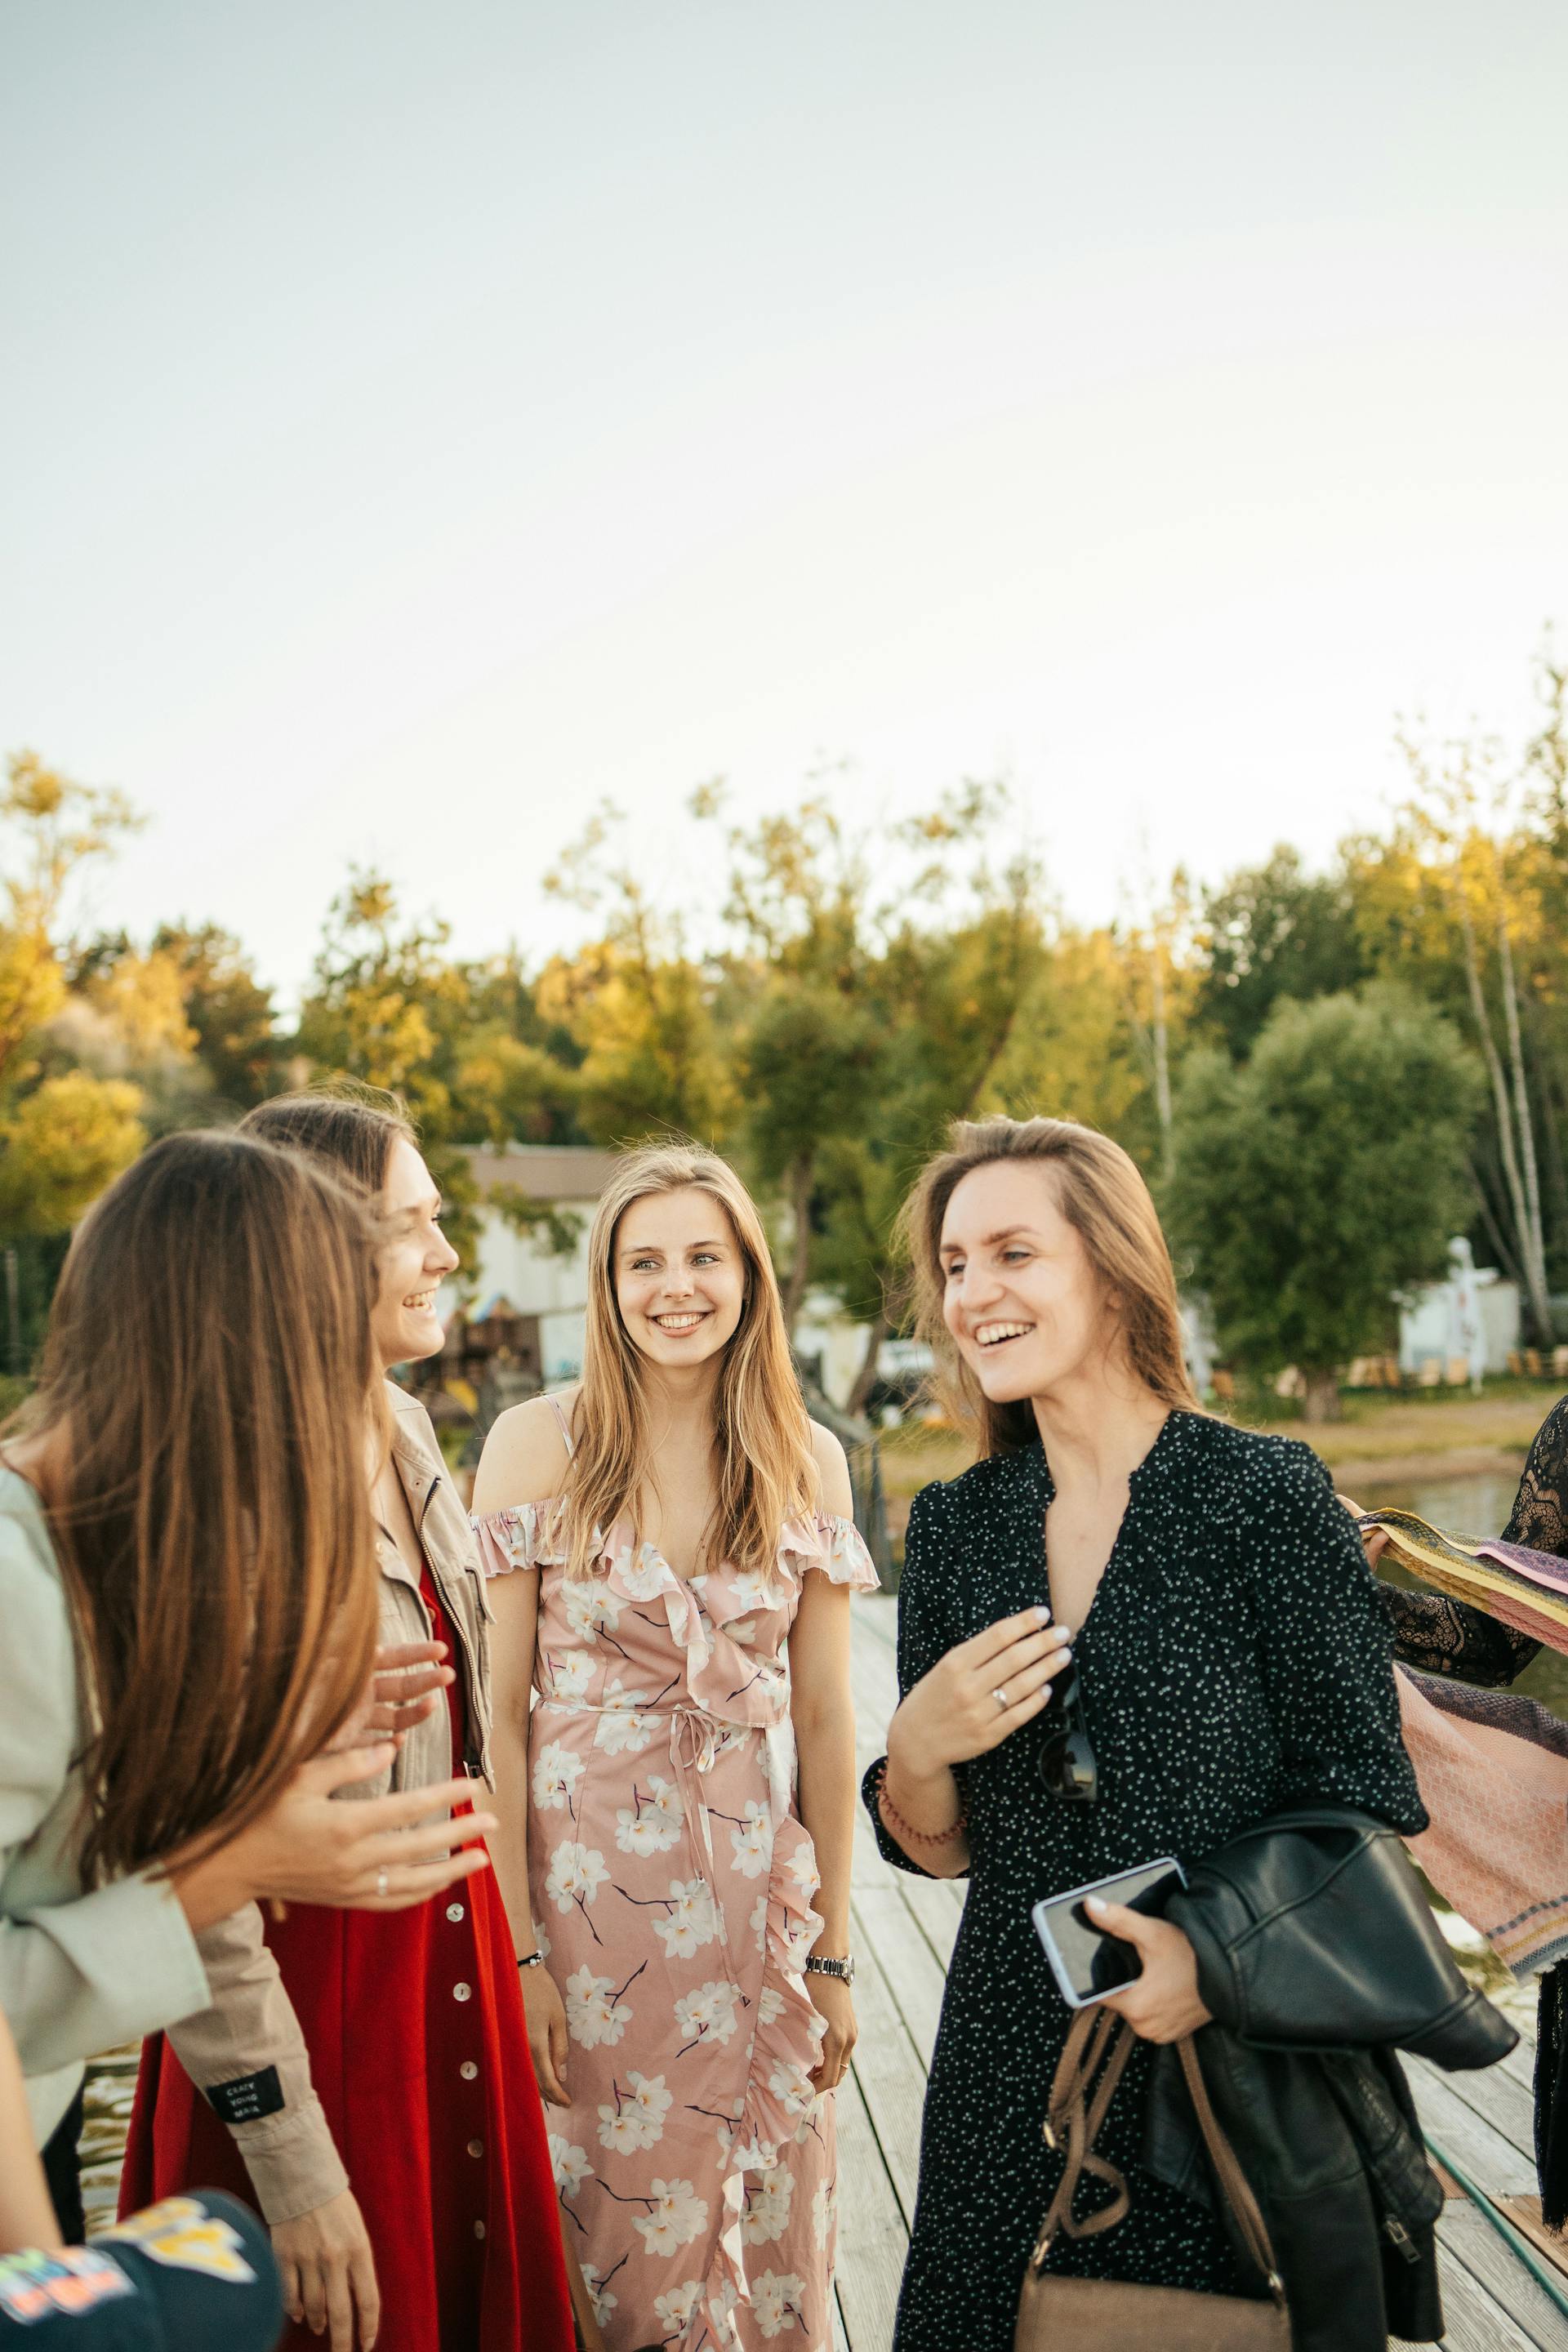 Mujeres riendo mientras mantienen una conversación | Fuente: Pexels